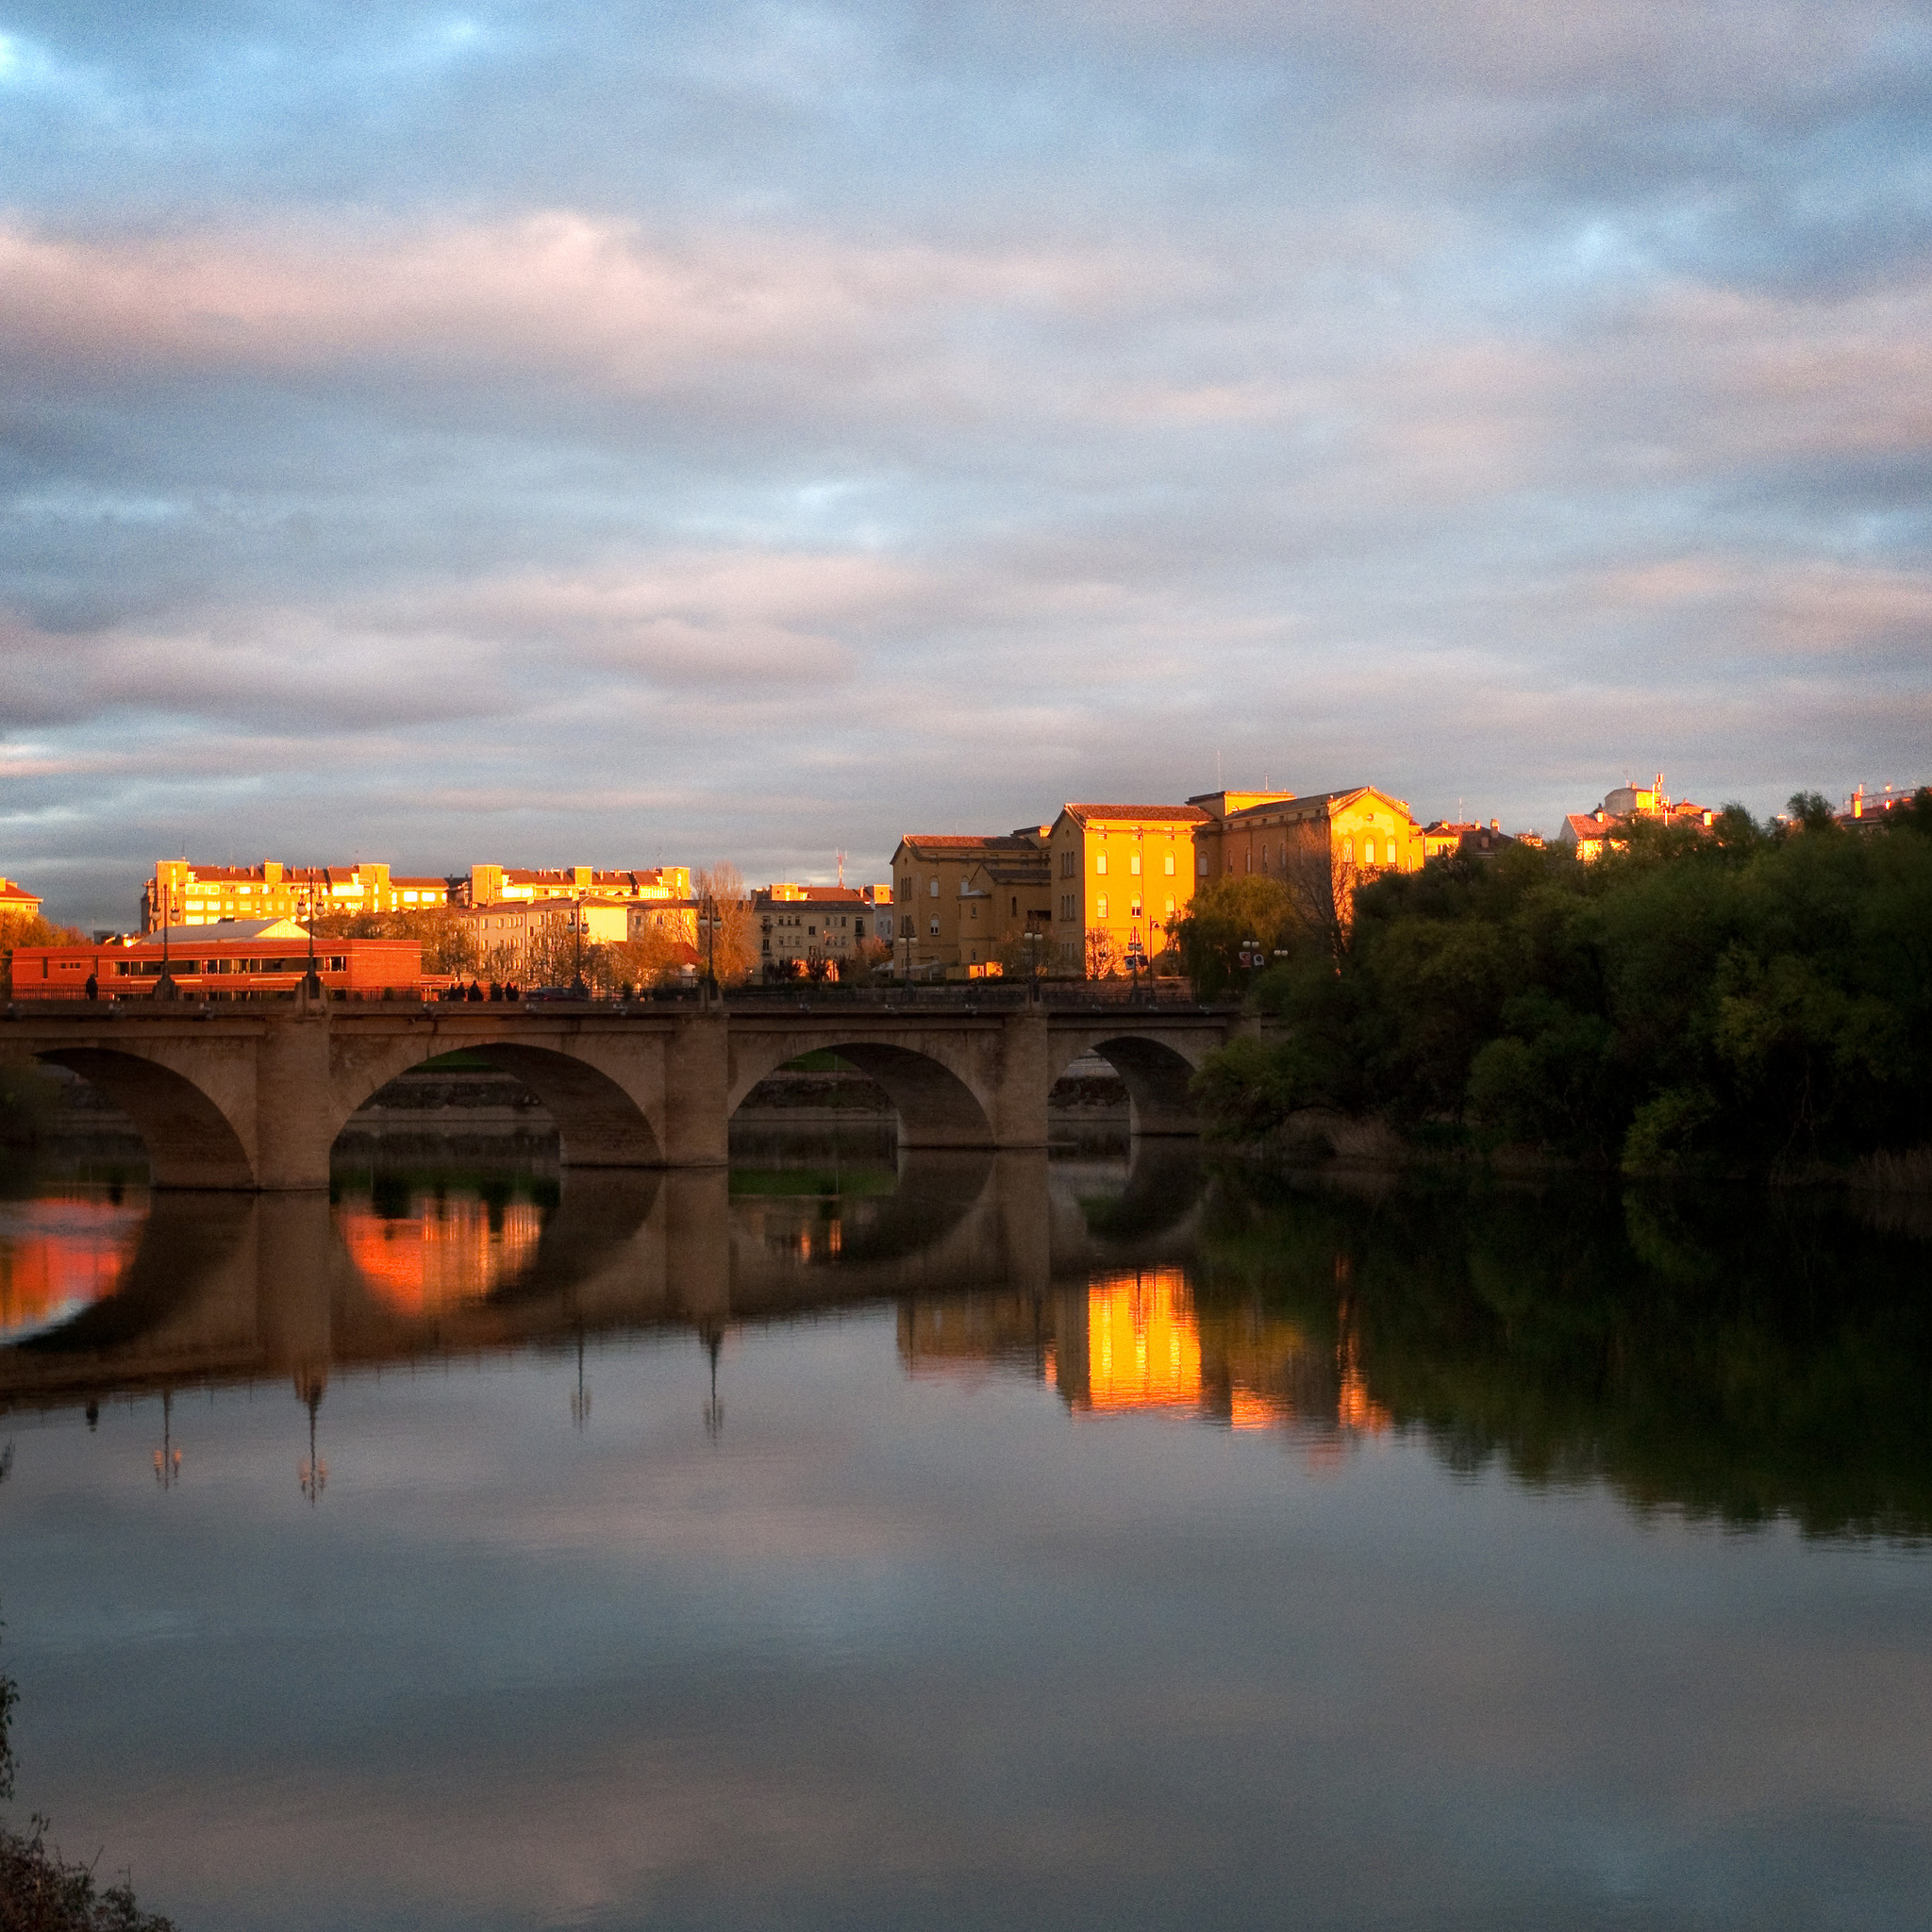 Puente de piedra de Logroño (fotografía cedida en Flickr por Roberto Latxaga bajo las siguientes condiciones)